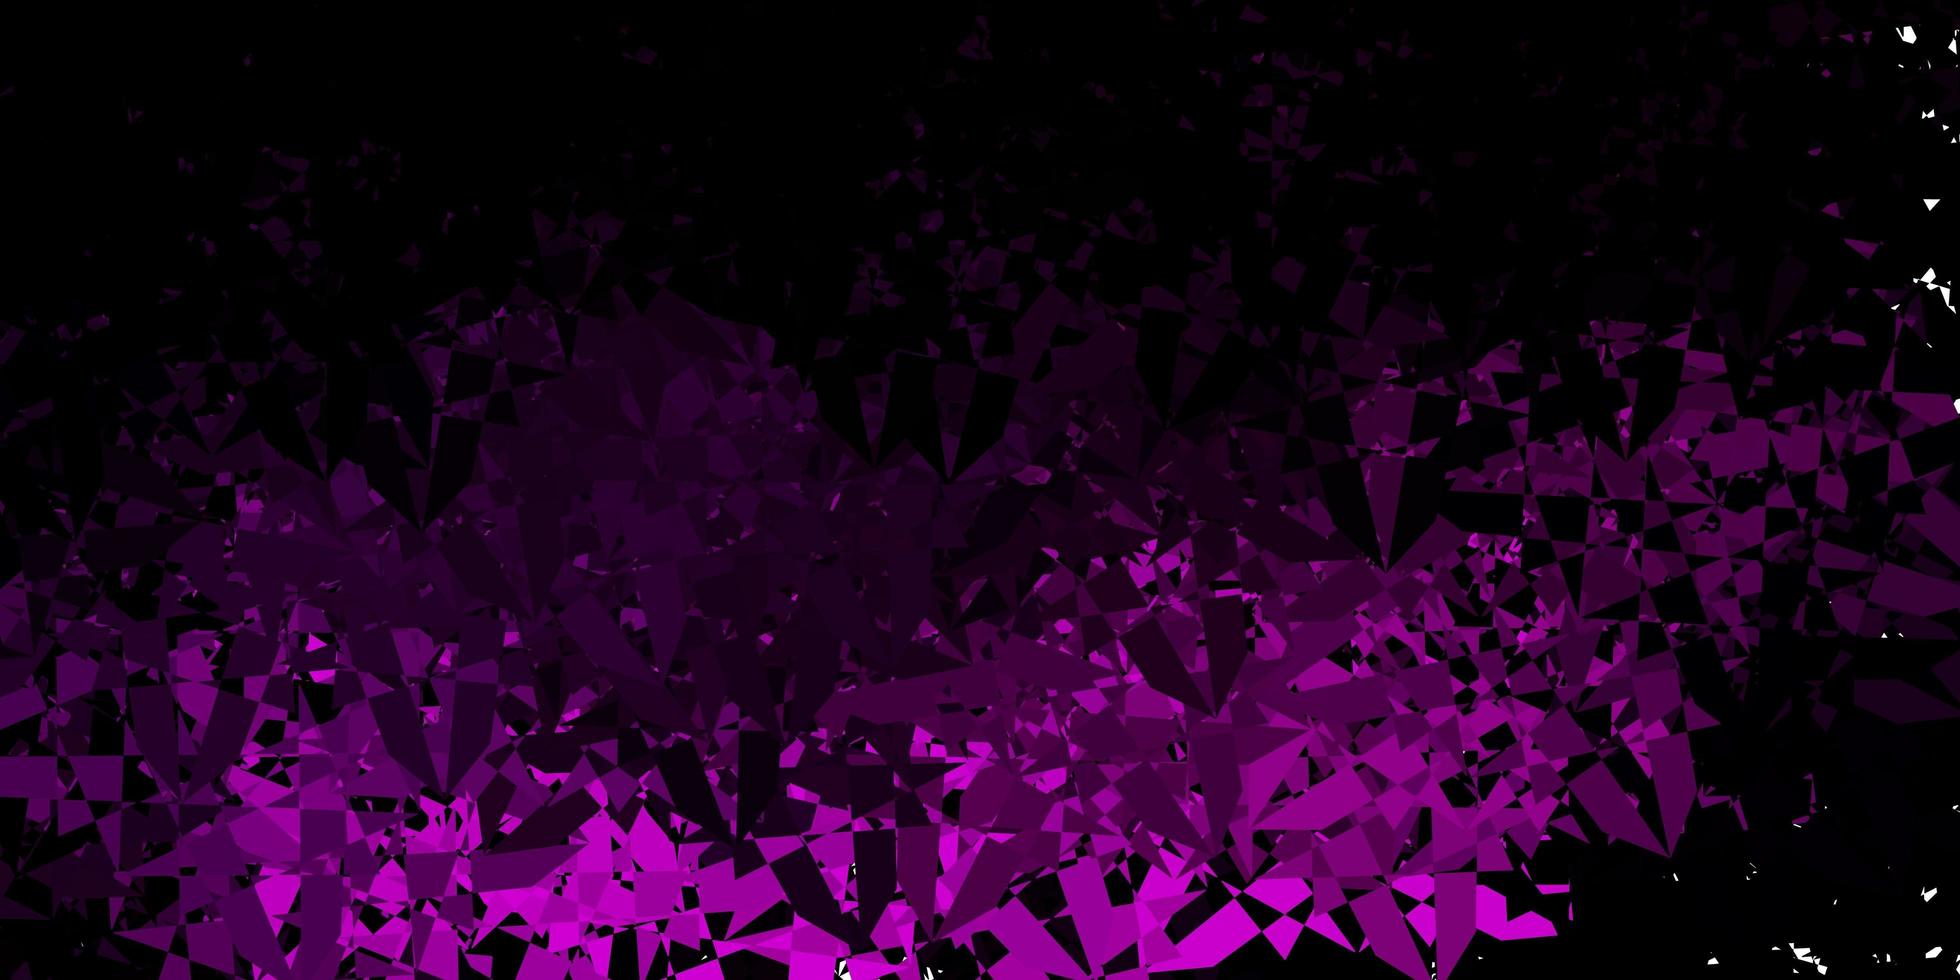 sfondo vettoriale viola scuro con forme poligonali.